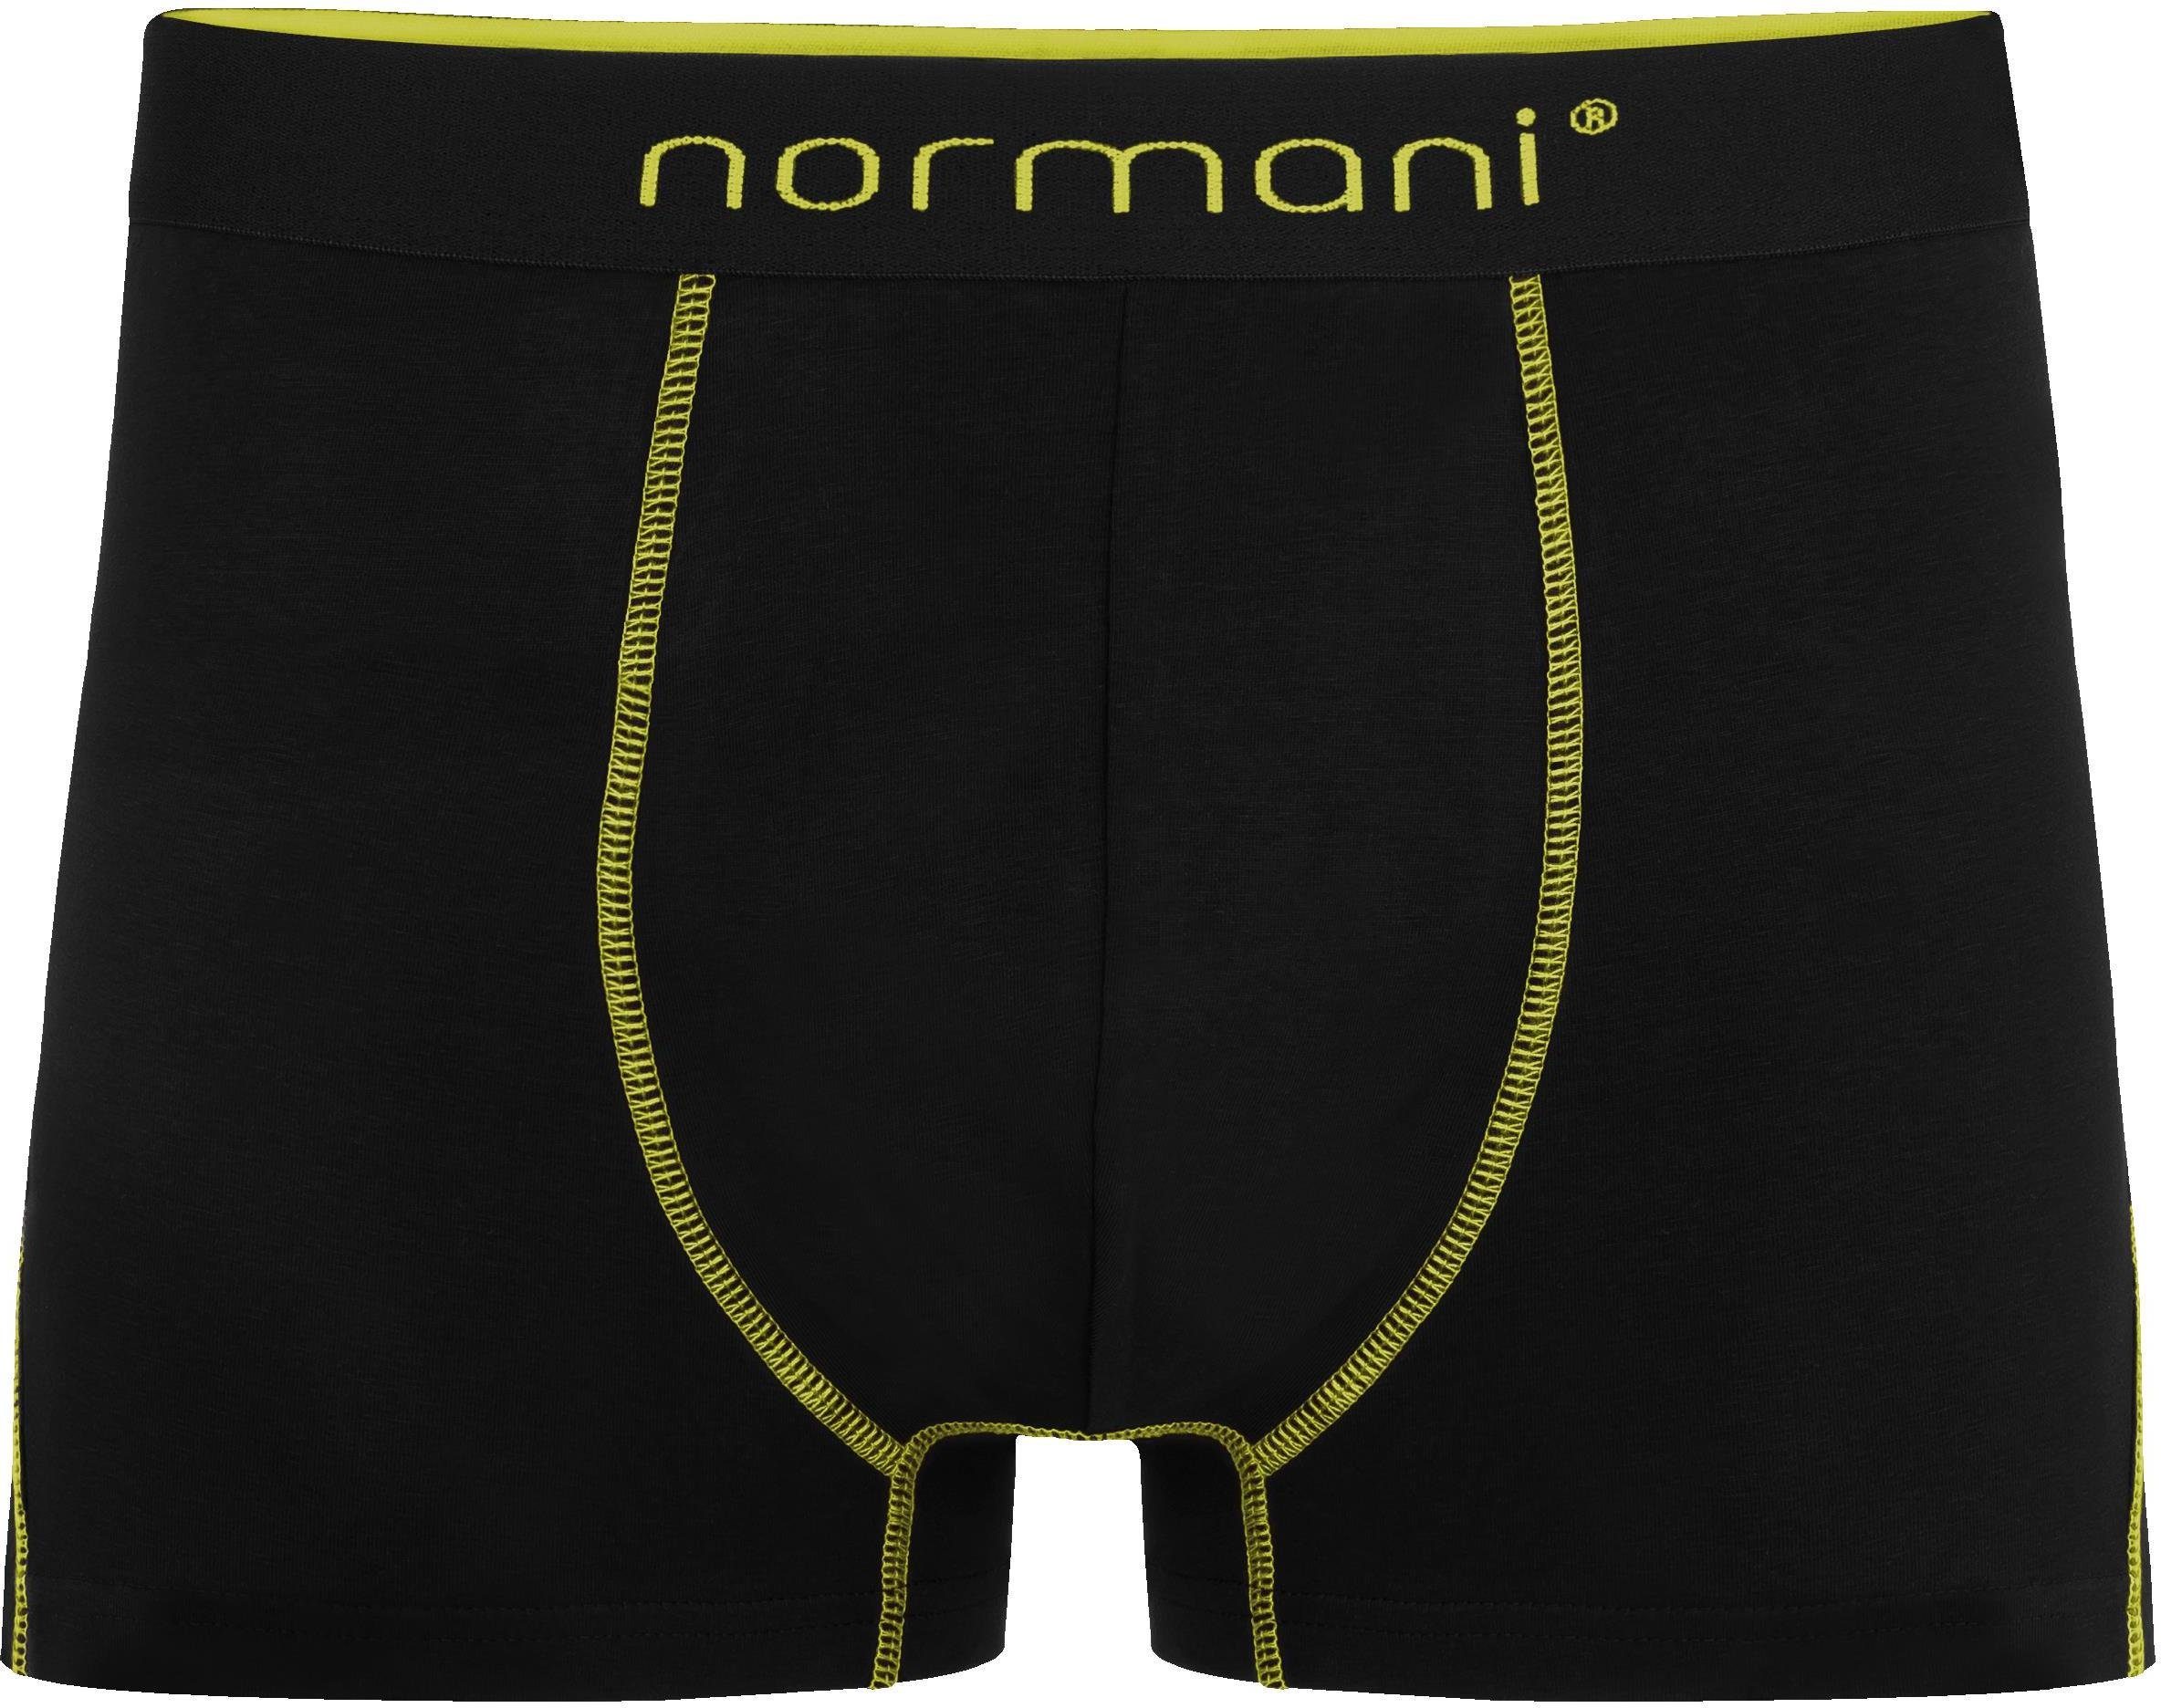 Gelb/Grün/Rot Unterhose Baumwolle Männer normani 12 x atmungsaktiver Baumwoll-Boxershorts für Herren aus Boxershorts